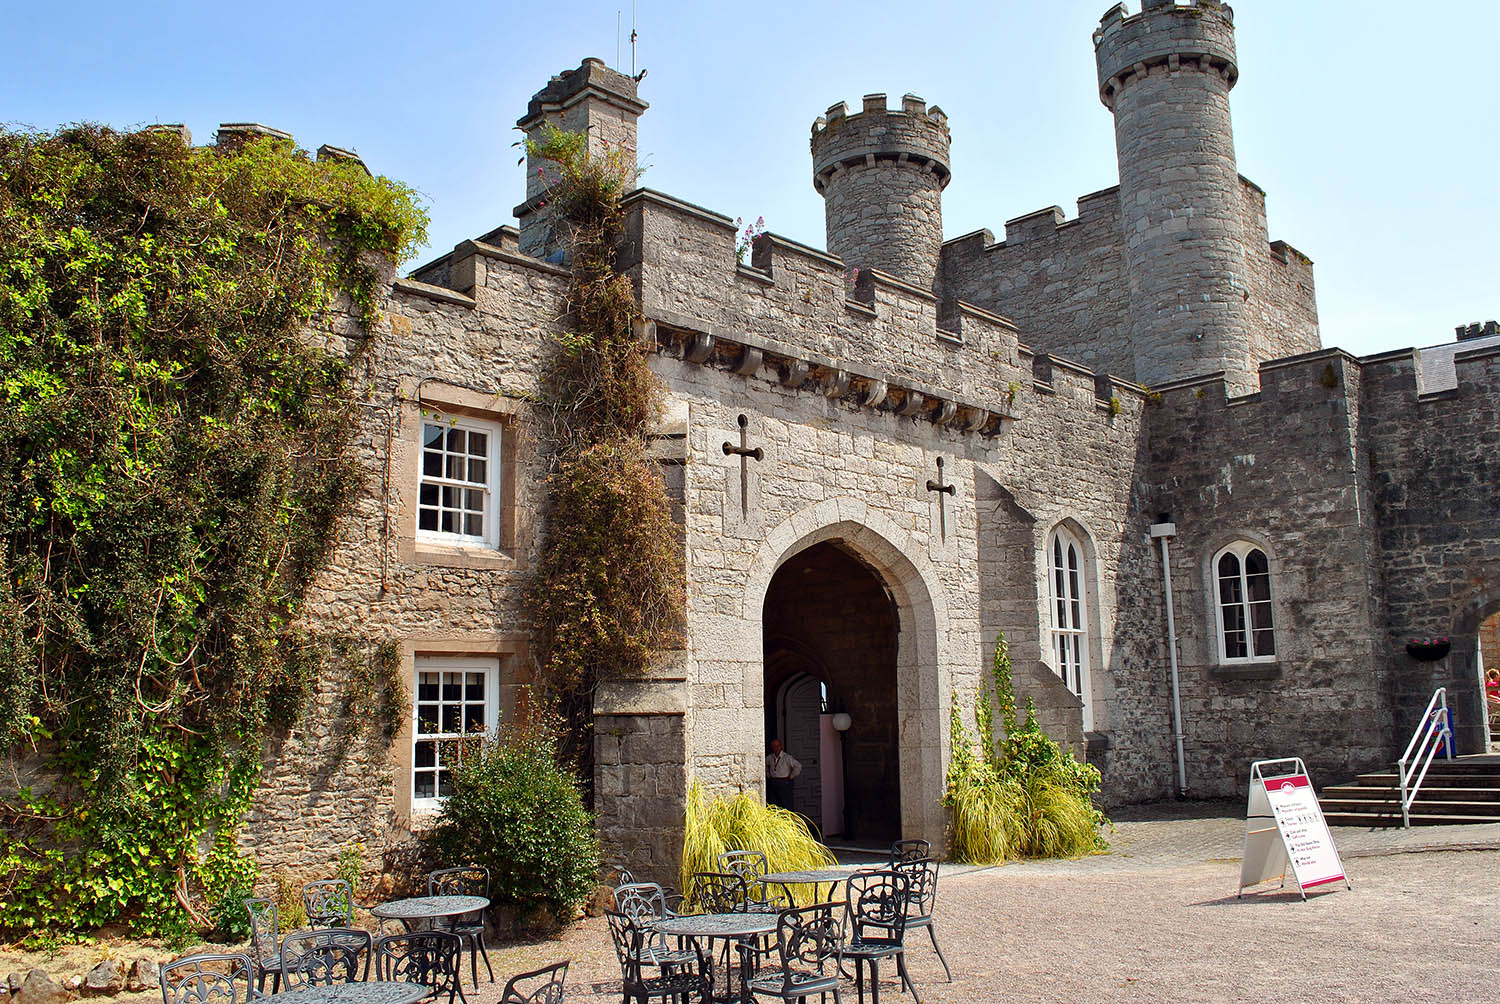 Ruthin Castle in North Wales: Das Luxusschloss soll von Geistern bewohnt sein.